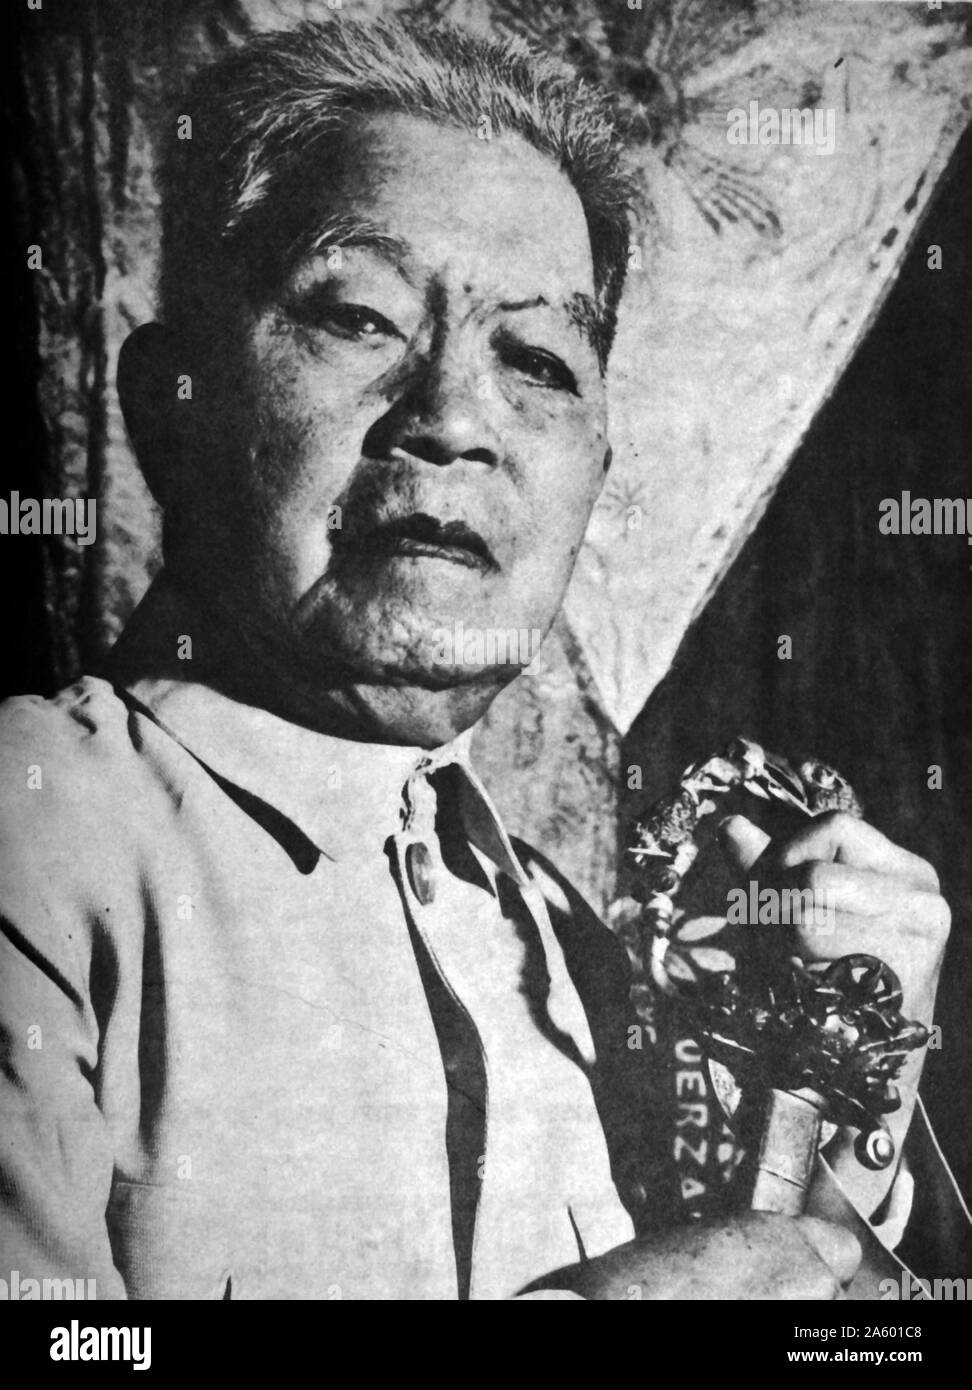 Emilio Aguinaldo y Famy (1869 - 1964), homme politique et révolutionnaire philippin et un chef militaire qui est officiellement reconnu comme étant le premier président des Philippines (1899-1901) et a dirigé les forces des Philippines d'abord contre l'Espagne dans la dernière partie de la révolution philippine (1896-1897), puis dans la guerre hispano-américaine (1898), et enfin contre les États-Unis au cours de la Guerre des Philippines (1899-1901). Il a été capturé par les forces américaines en 1901, qui a mis fin à sa présidence. Banque D'Images